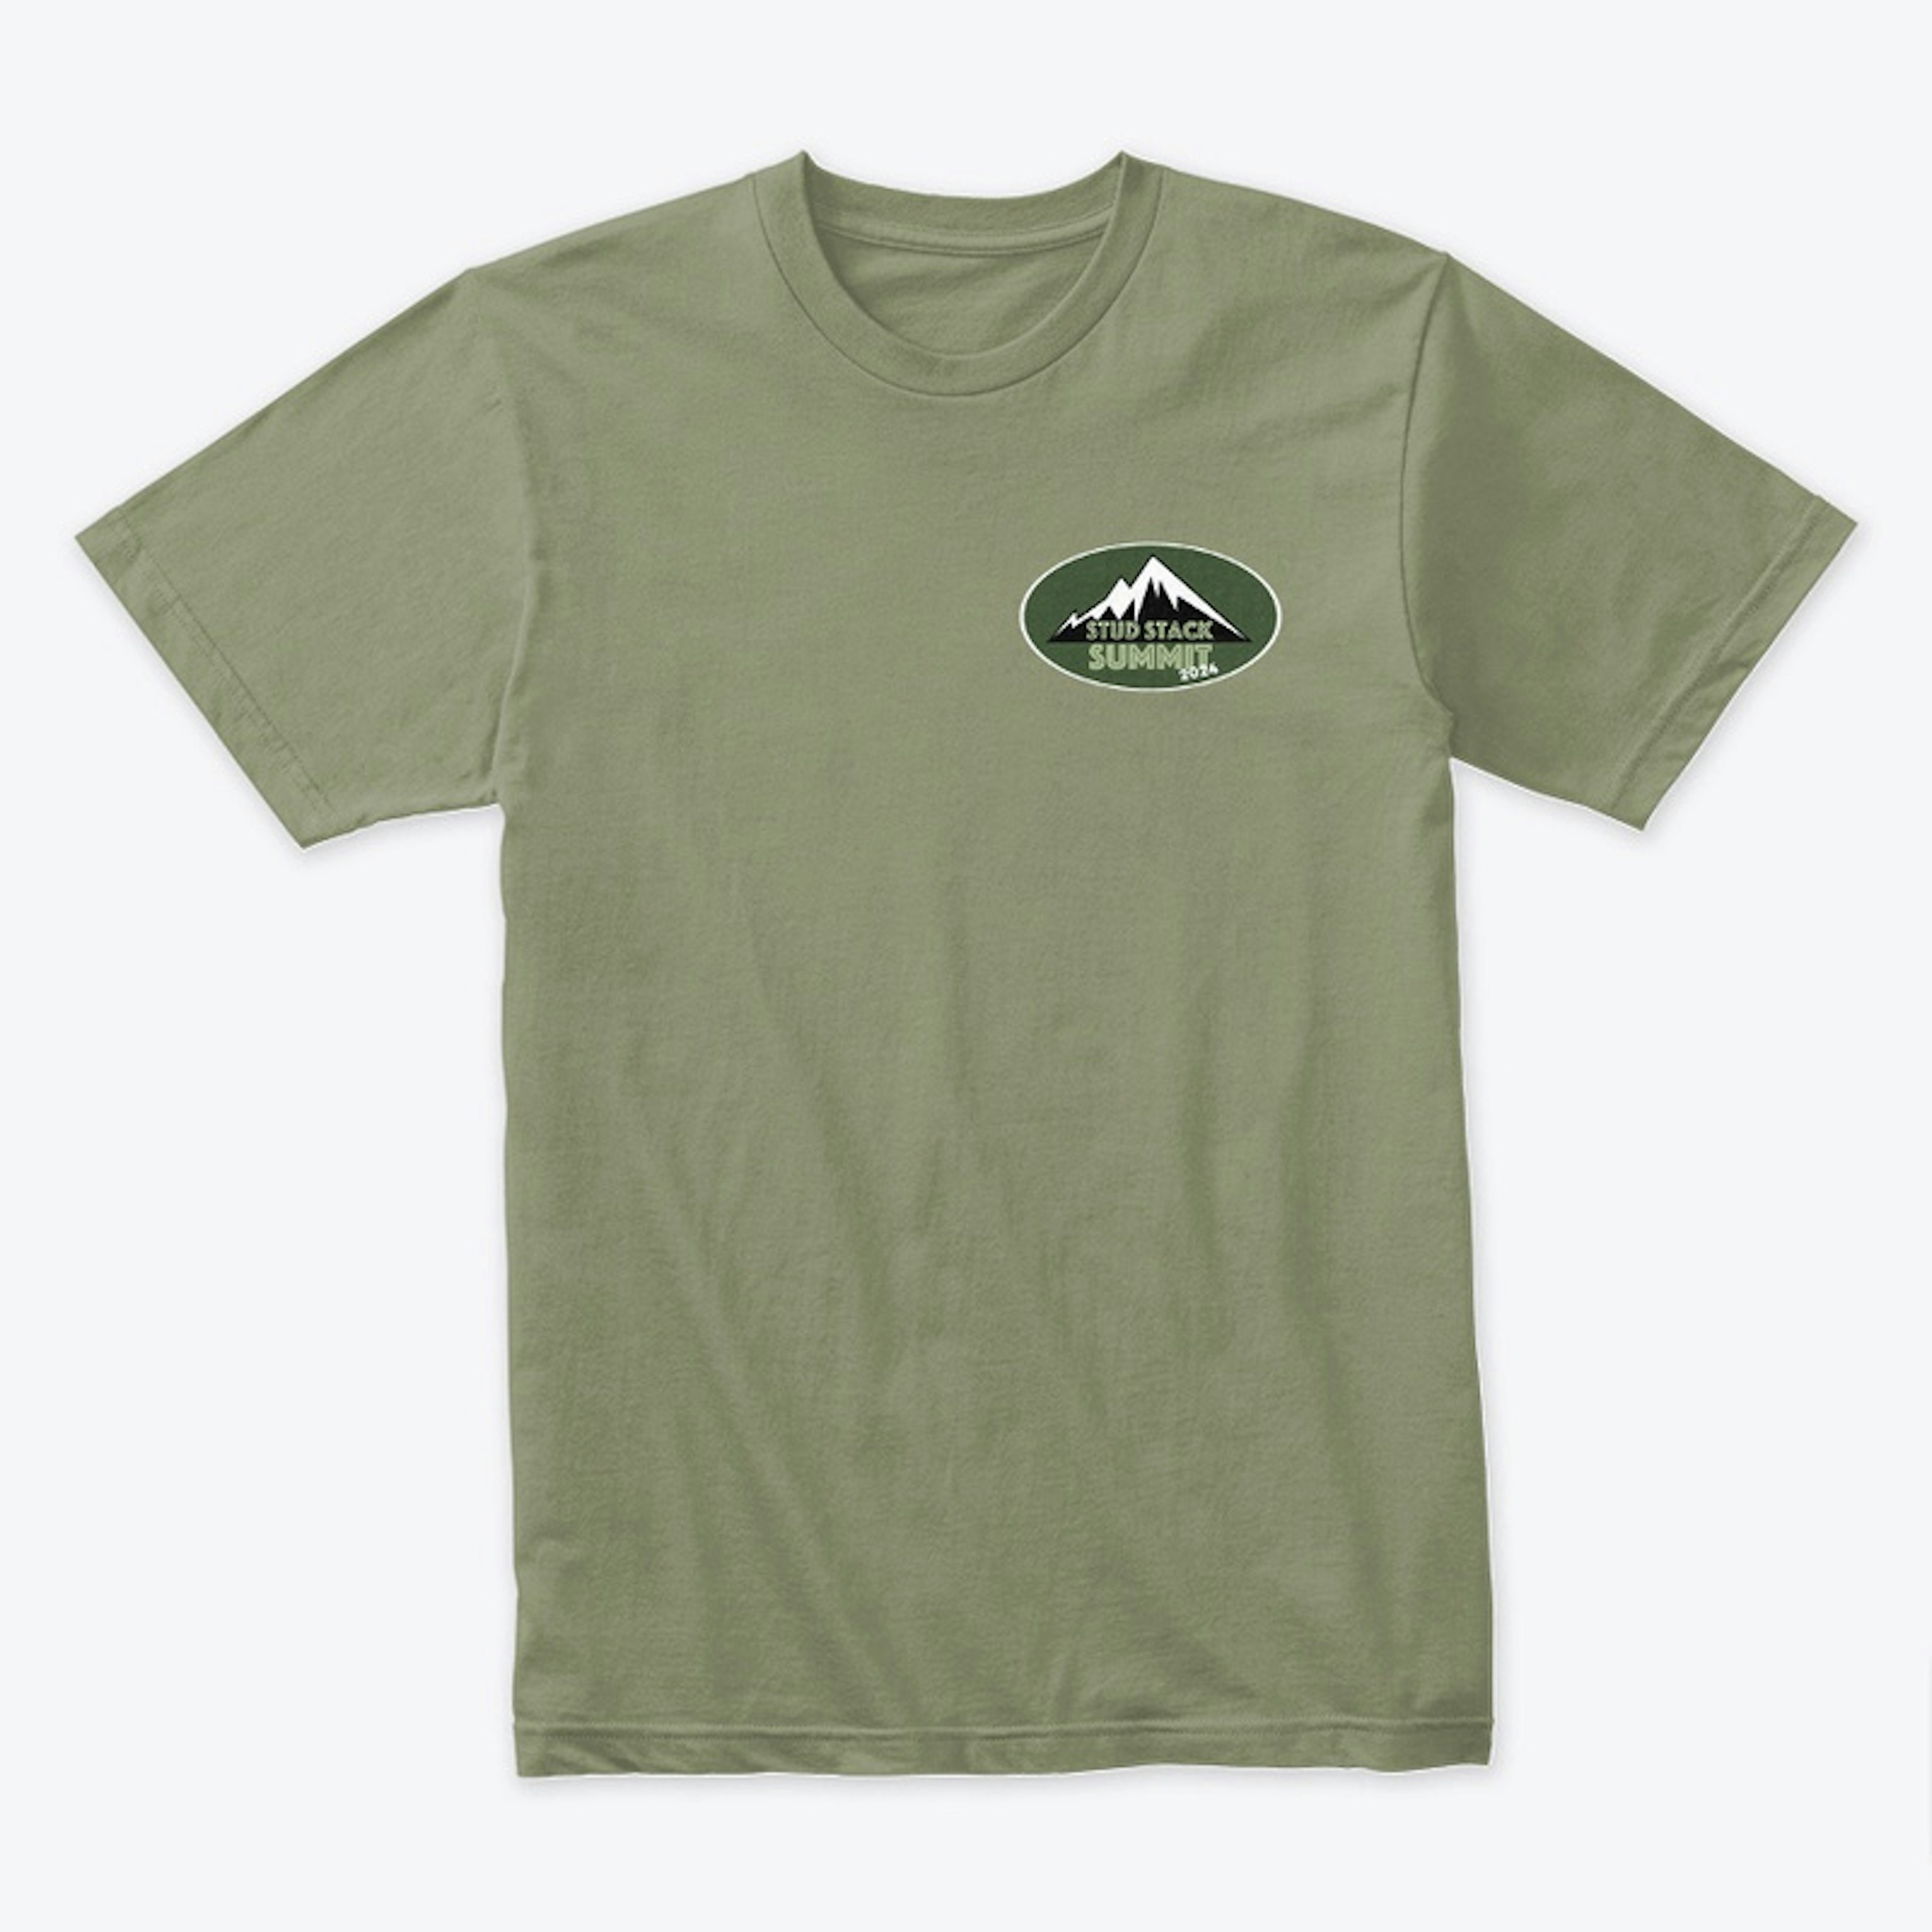 Stud Stack Summit T-Shirt